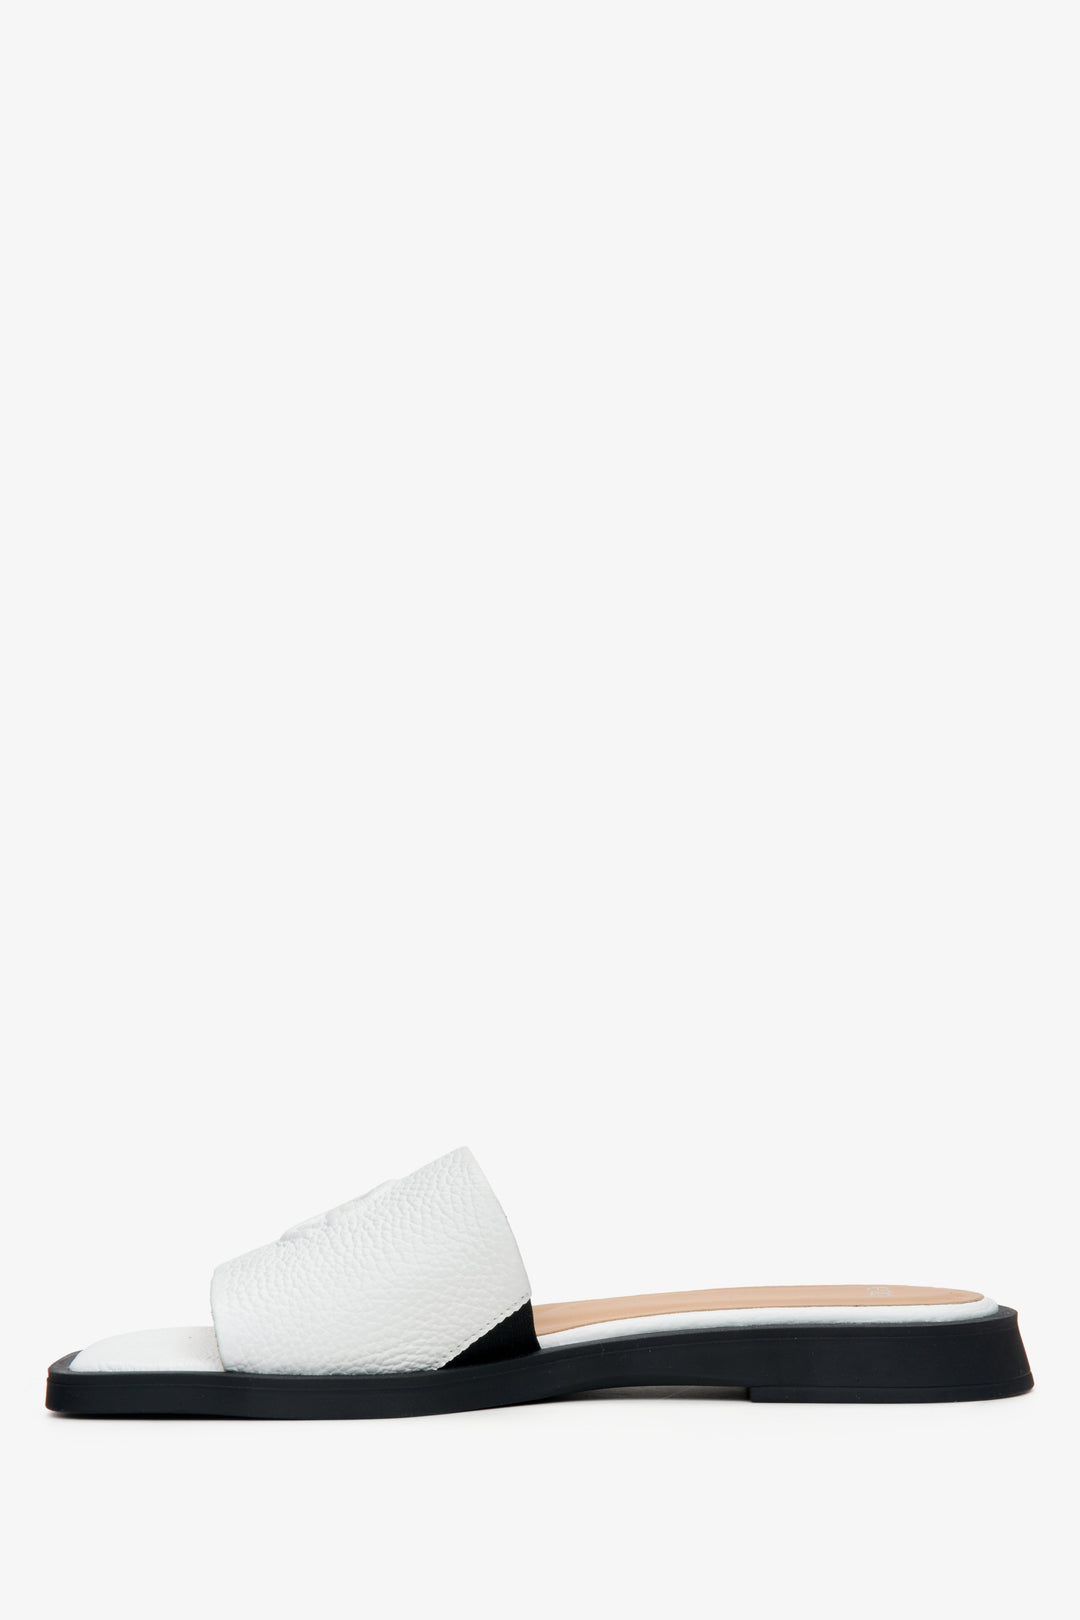 Białe skórzane klapki damskie Estro - profil buta.